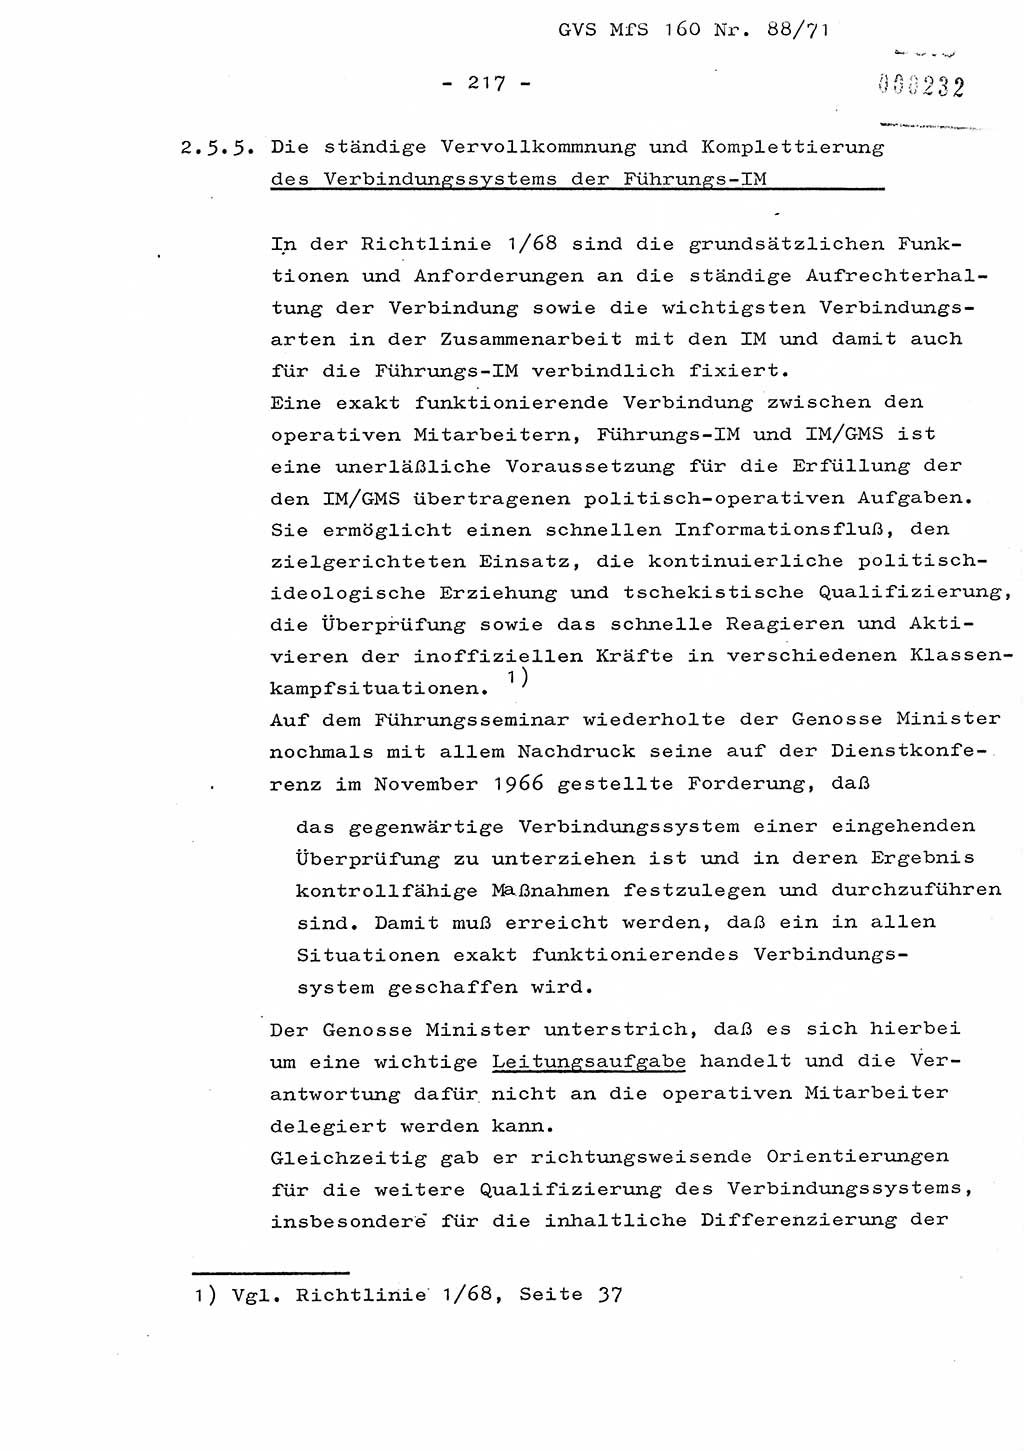 Dissertation Oberstleutnant Josef Schwarz (BV Schwerin), Major Fritz Amm (JHS), Hauptmann Peter Gräßler (JHS), Ministerium für Staatssicherheit (MfS) [Deutsche Demokratische Republik (DDR)], Juristische Hochschule (JHS), Geheime Verschlußsache (GVS) 160-88/71, Potsdam 1972, Seite 217 (Diss. MfS DDR JHS GVS 160-88/71 1972, S. 217)